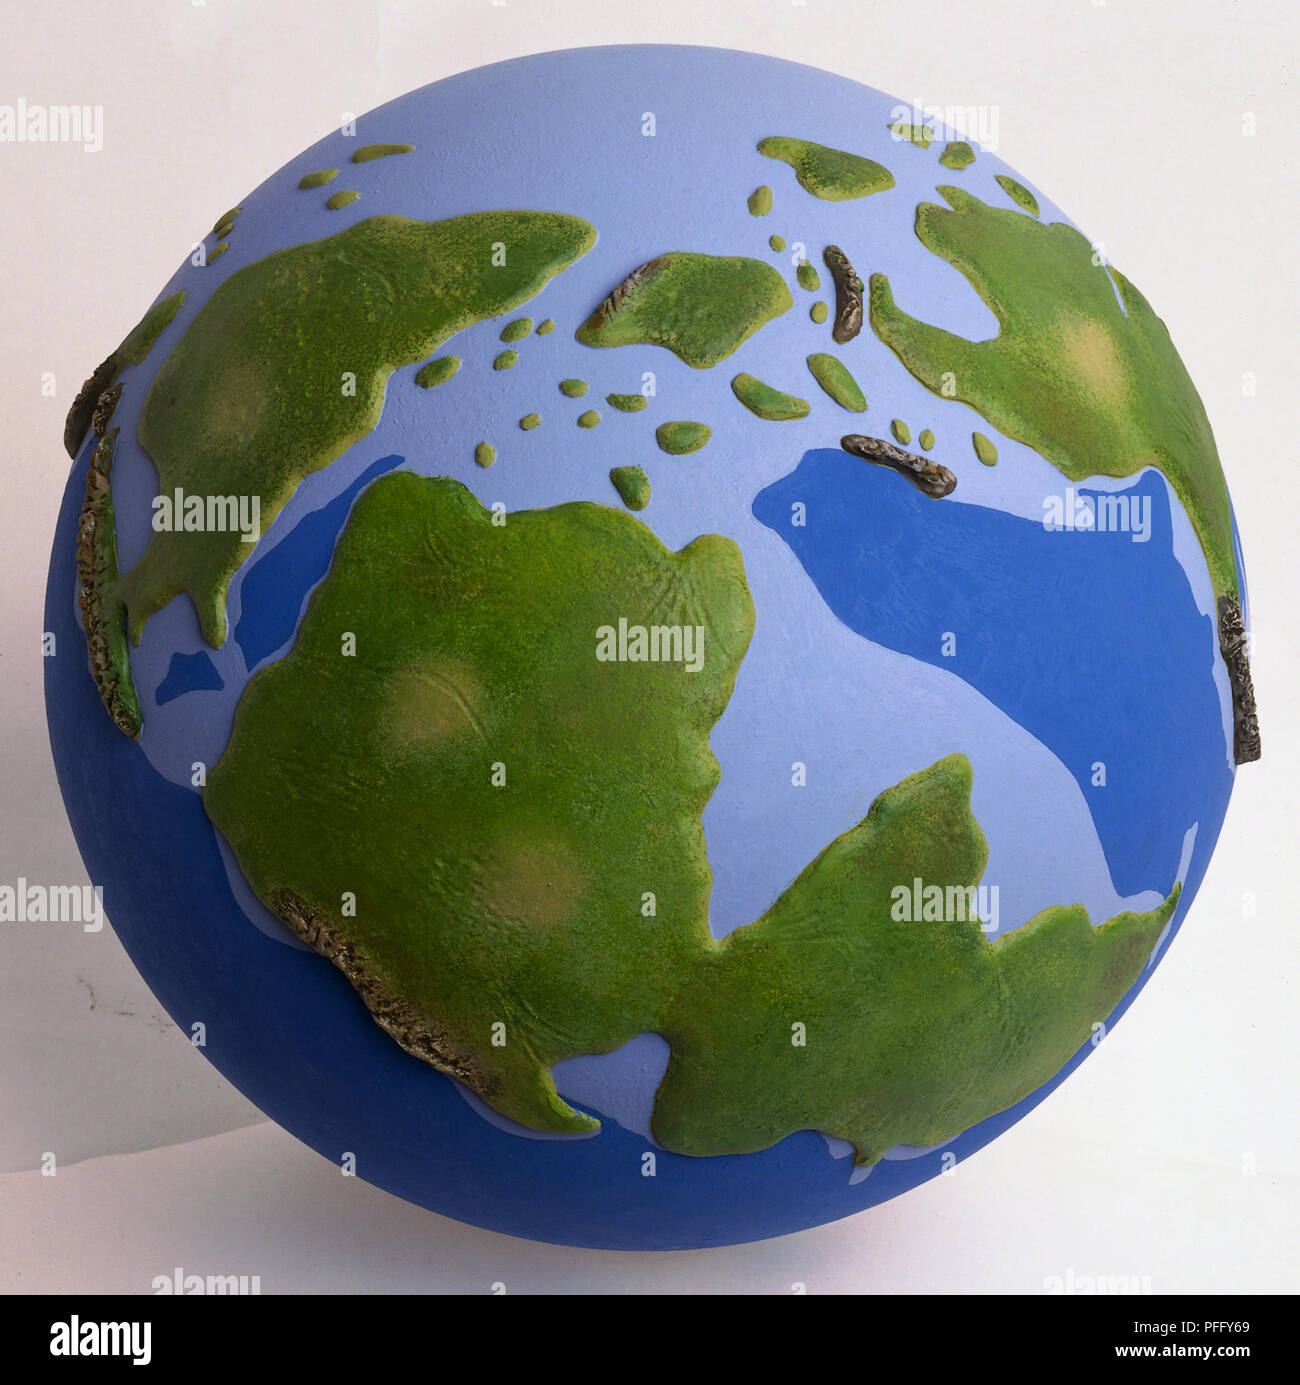 Le modèle de la terre durant la période jurassique avant les continents ont pris aujourd'hui des formes et emplacements. Morceaux épars de l'Amérique du Nord, Amérique du Sud et l'Afrique sont visibles. Banque D'Images